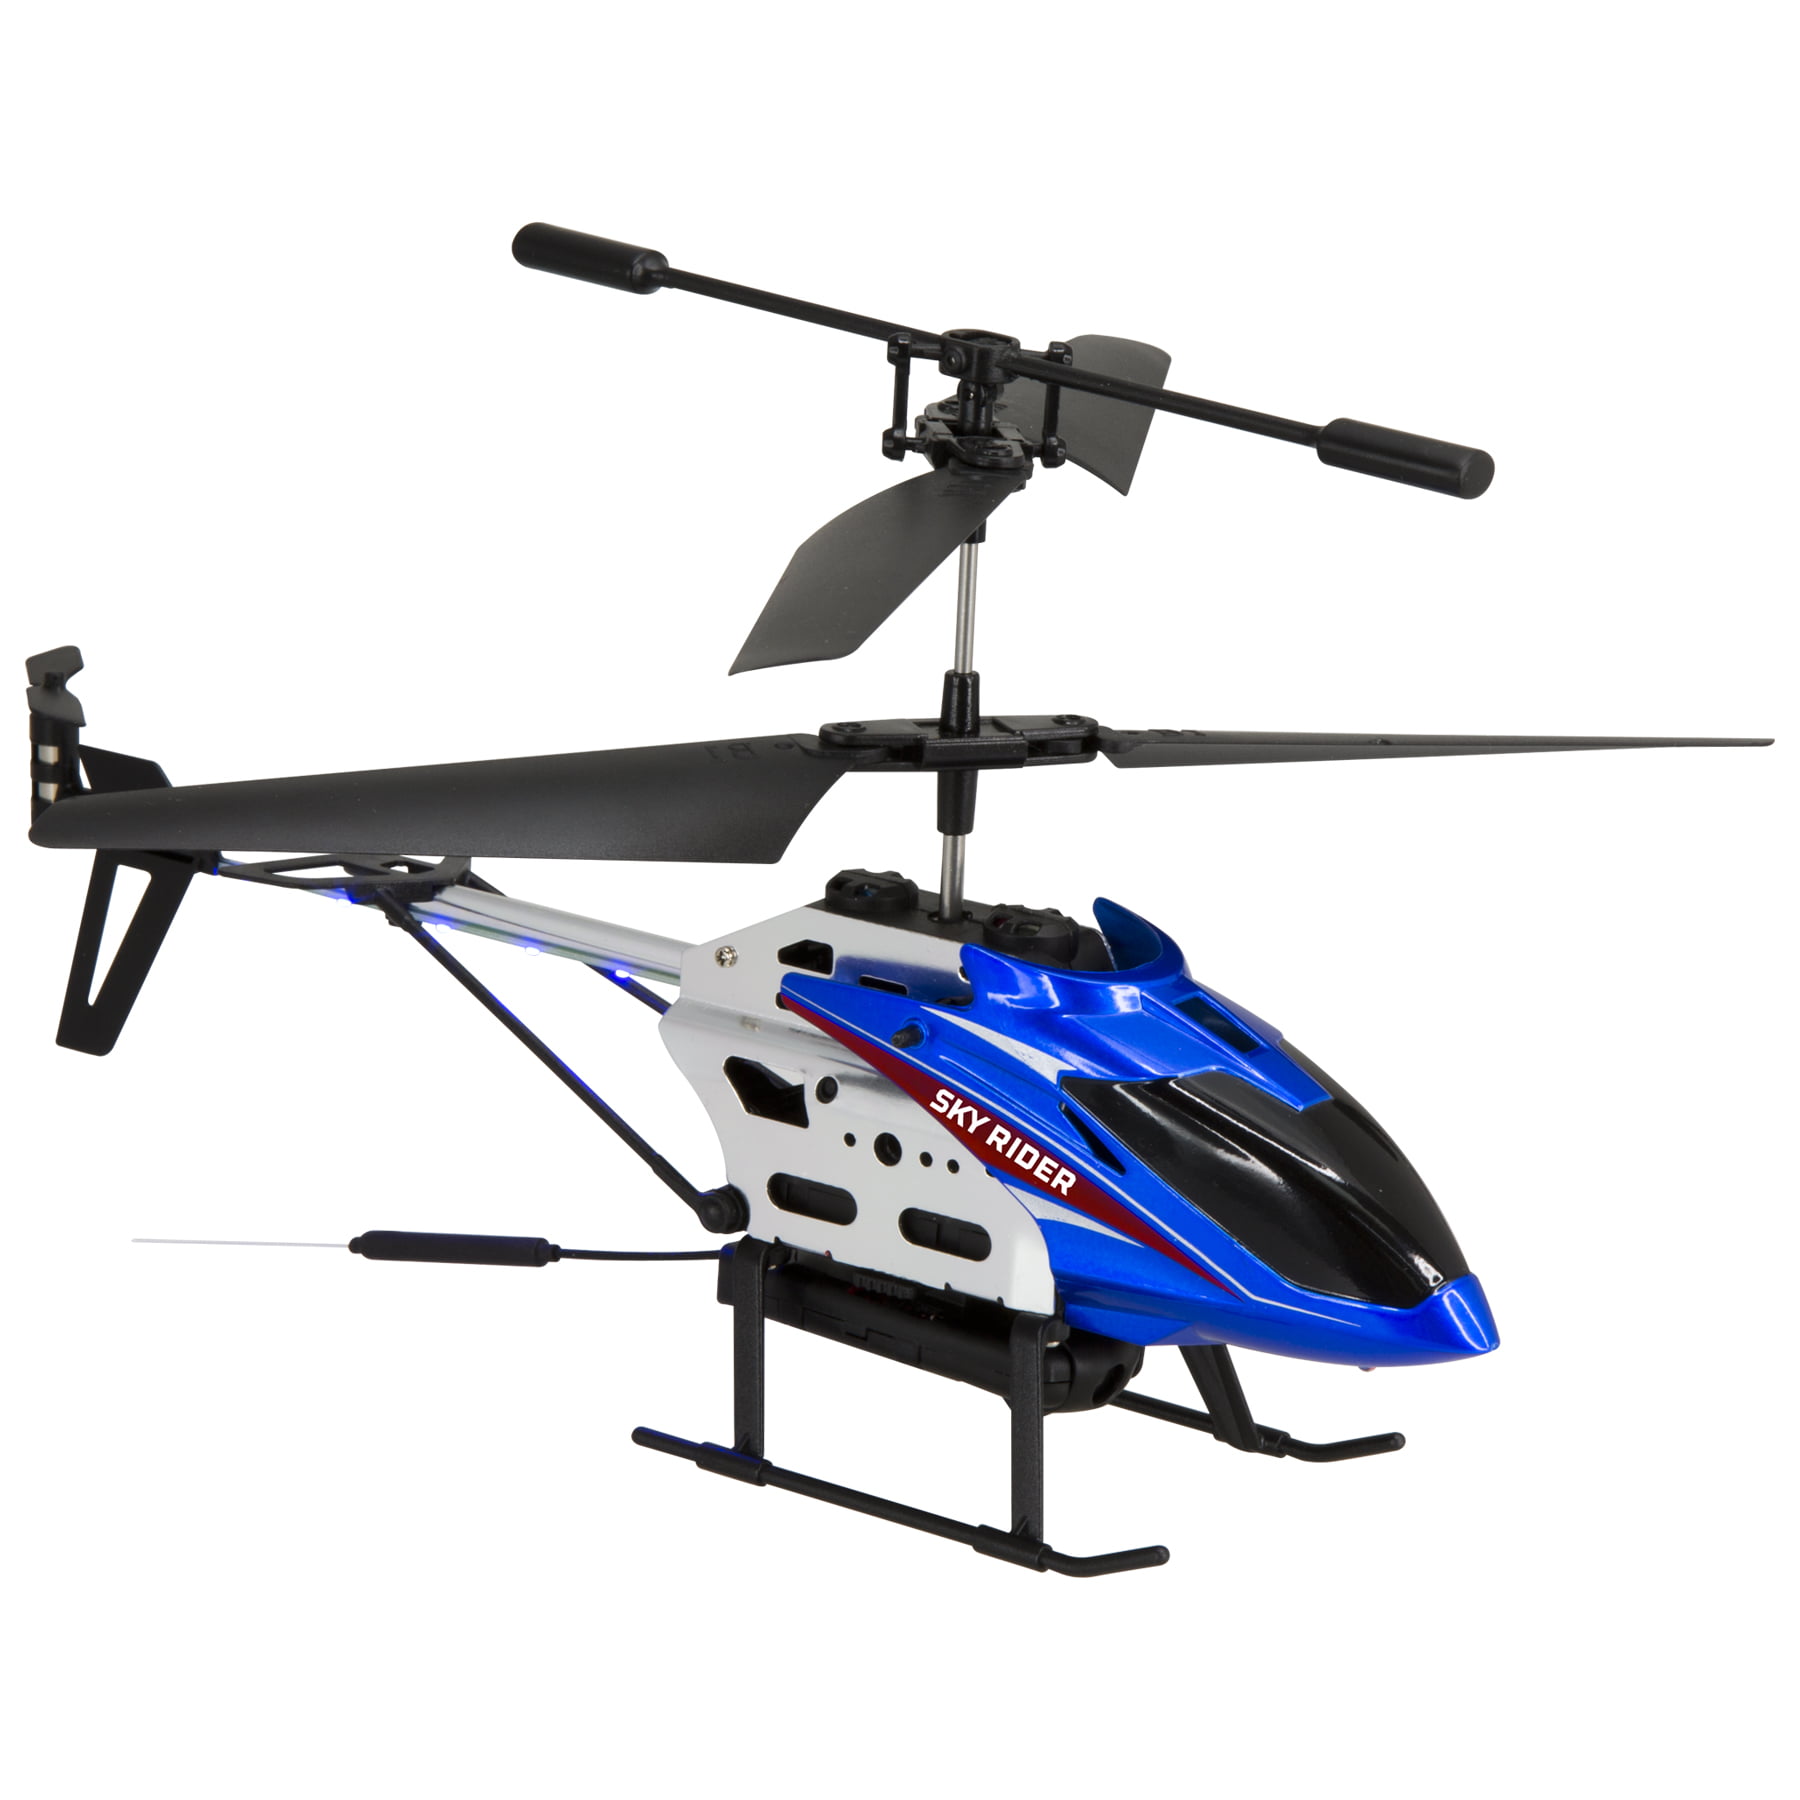 Curiosidad mercenario Avispón Sky Rider DRW241BU Helicopter Drone with Wi-Fi Camera, Blue - Walmart.com